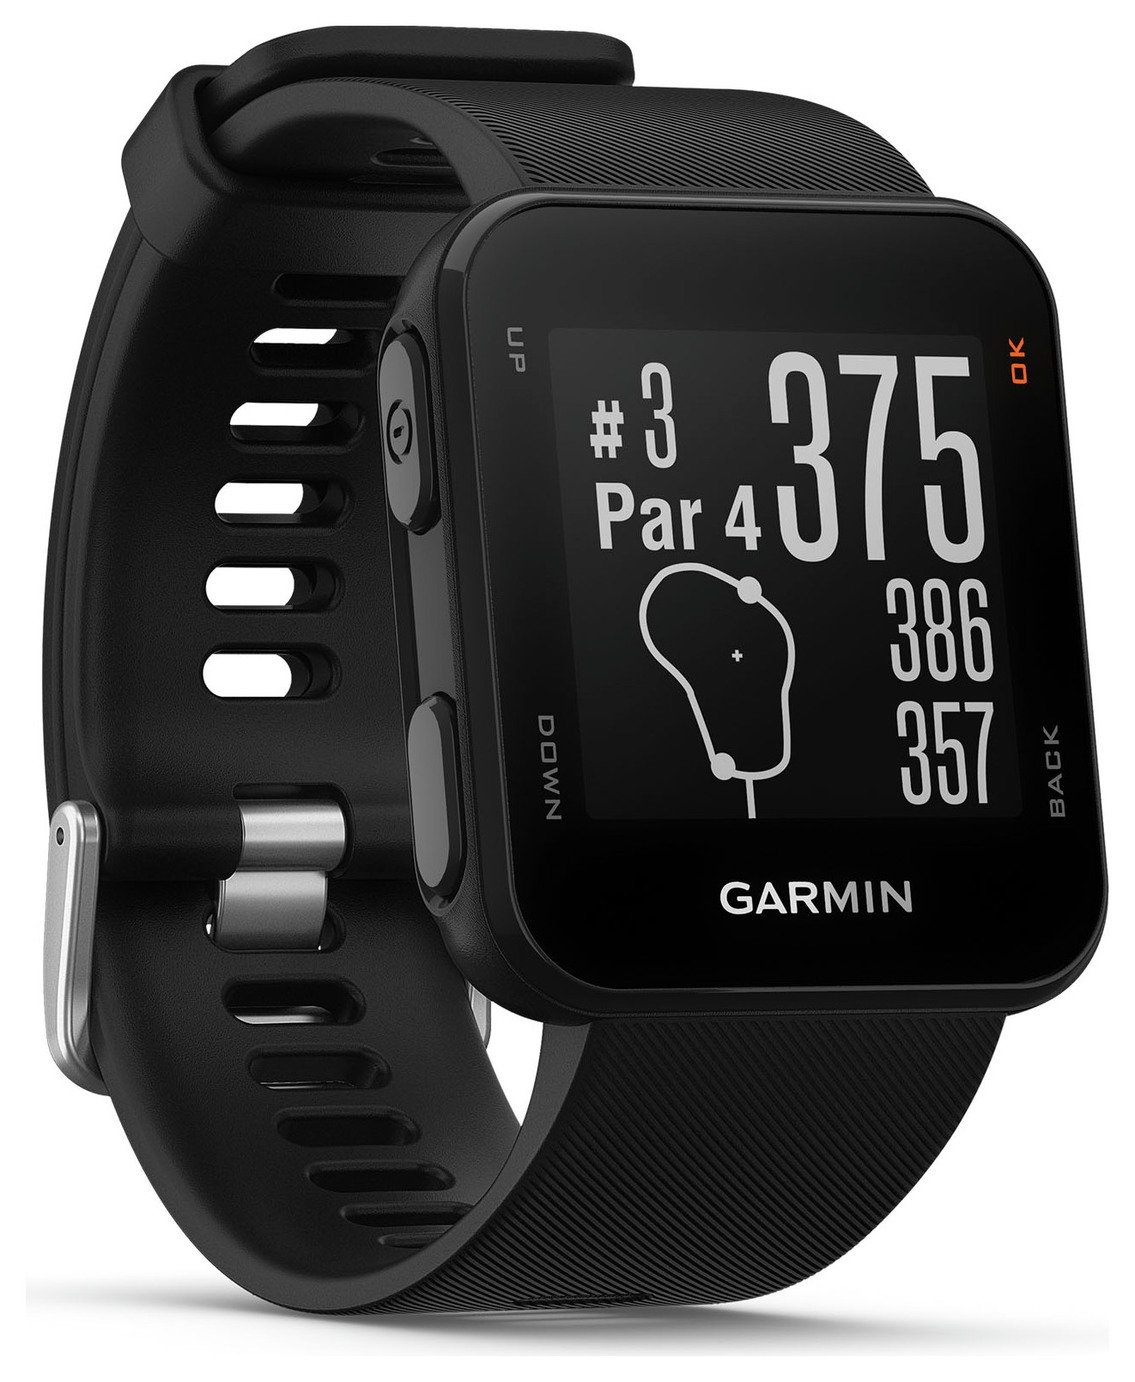 Garmin Approach S10 Golf Watch Review